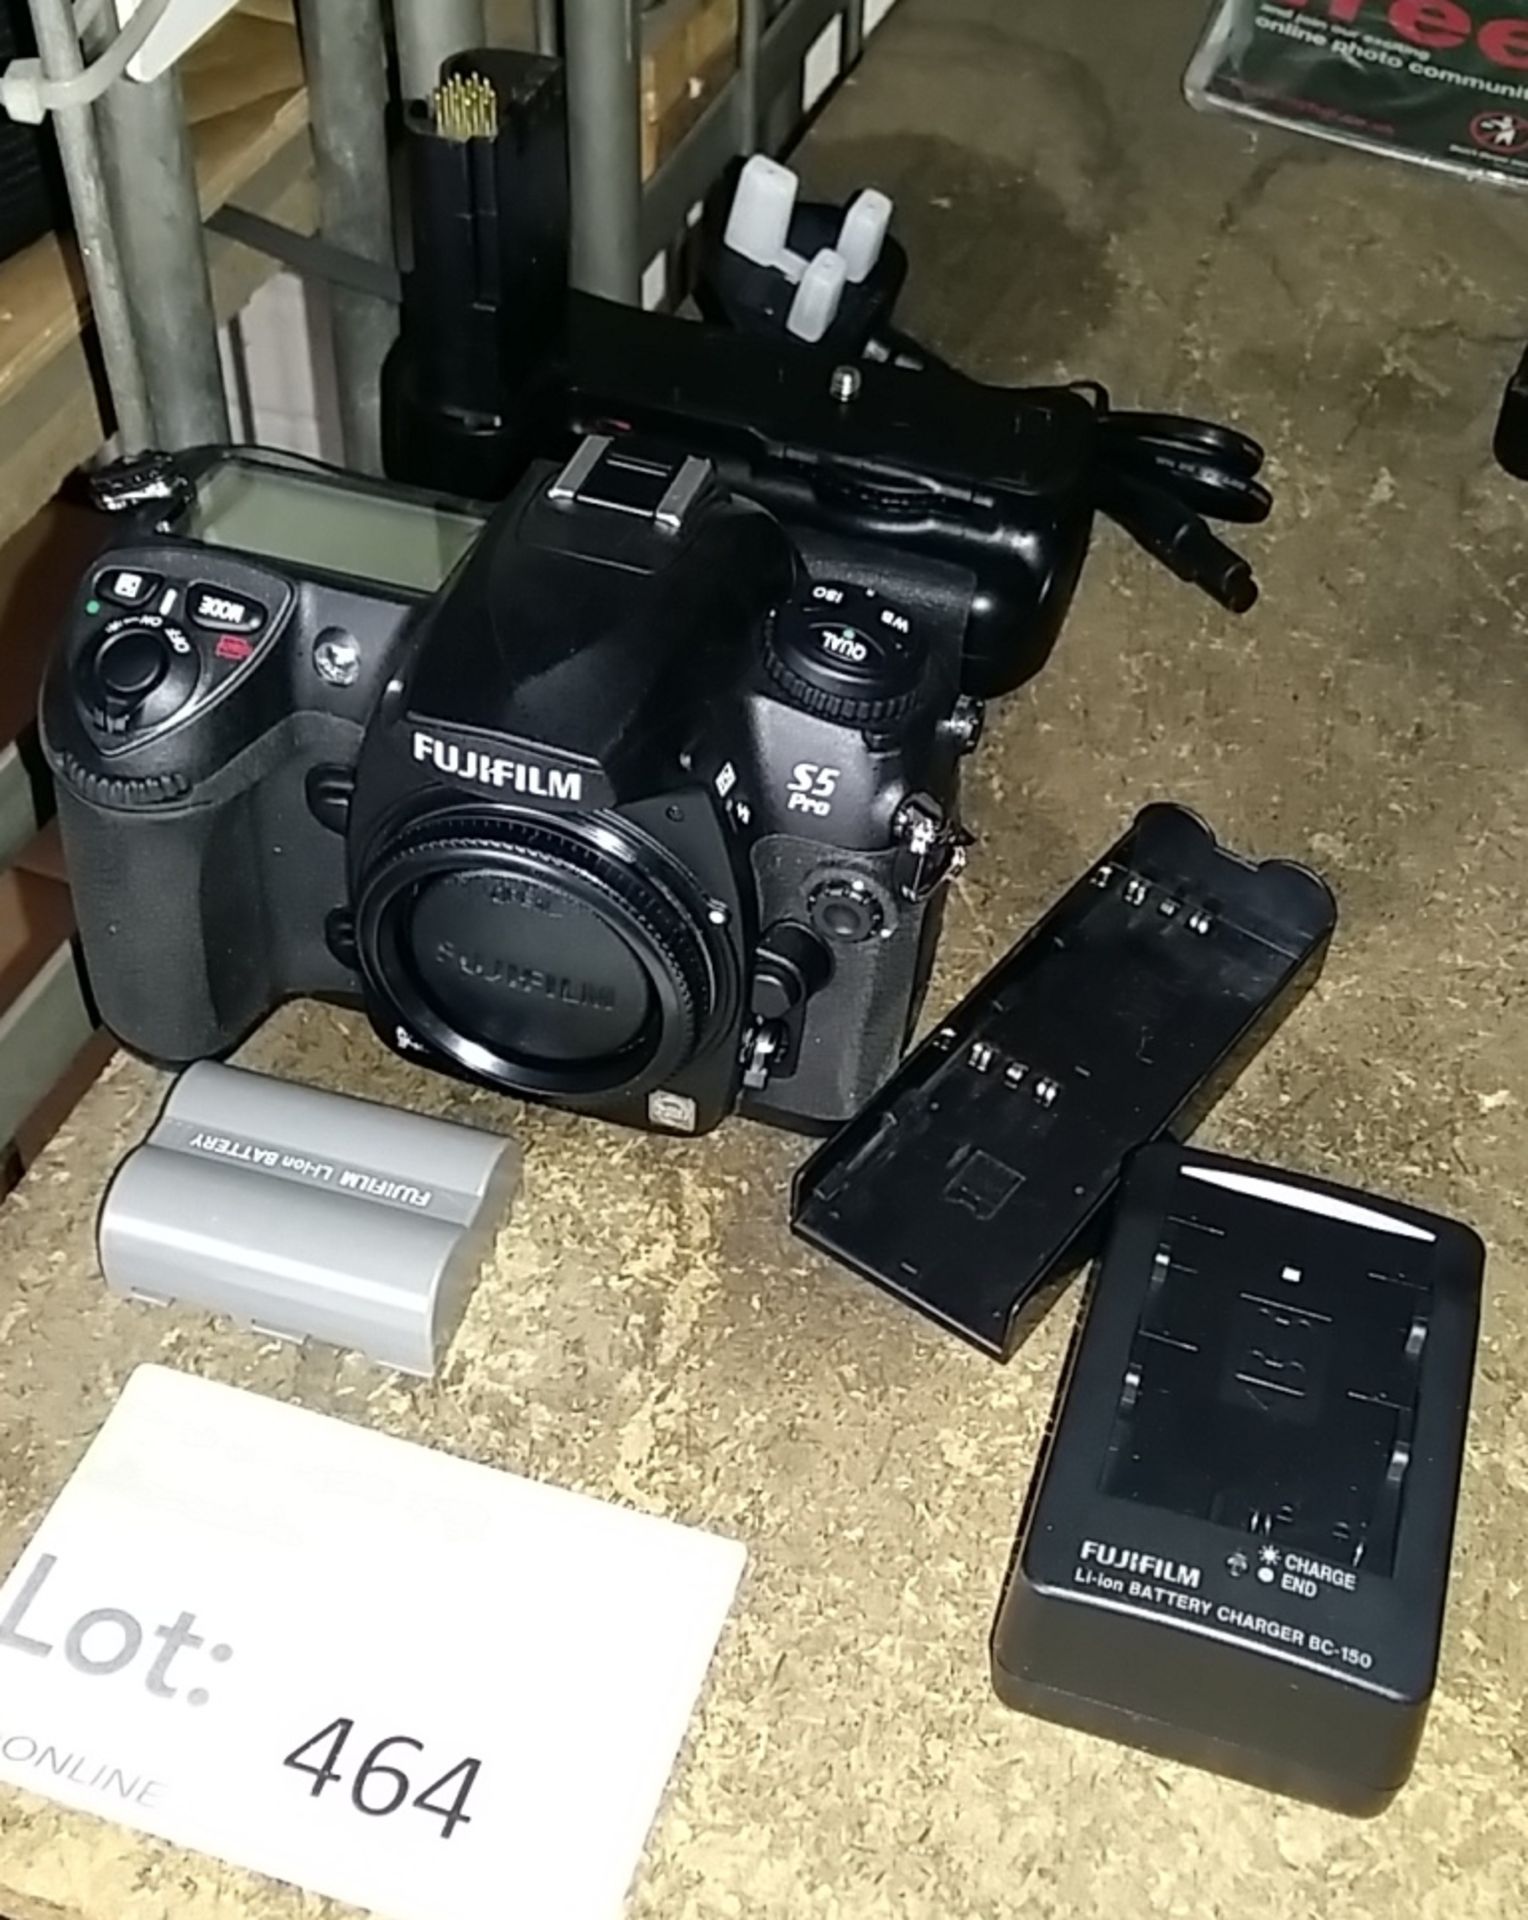 Fujifilm S5 Pro camera body, accessories